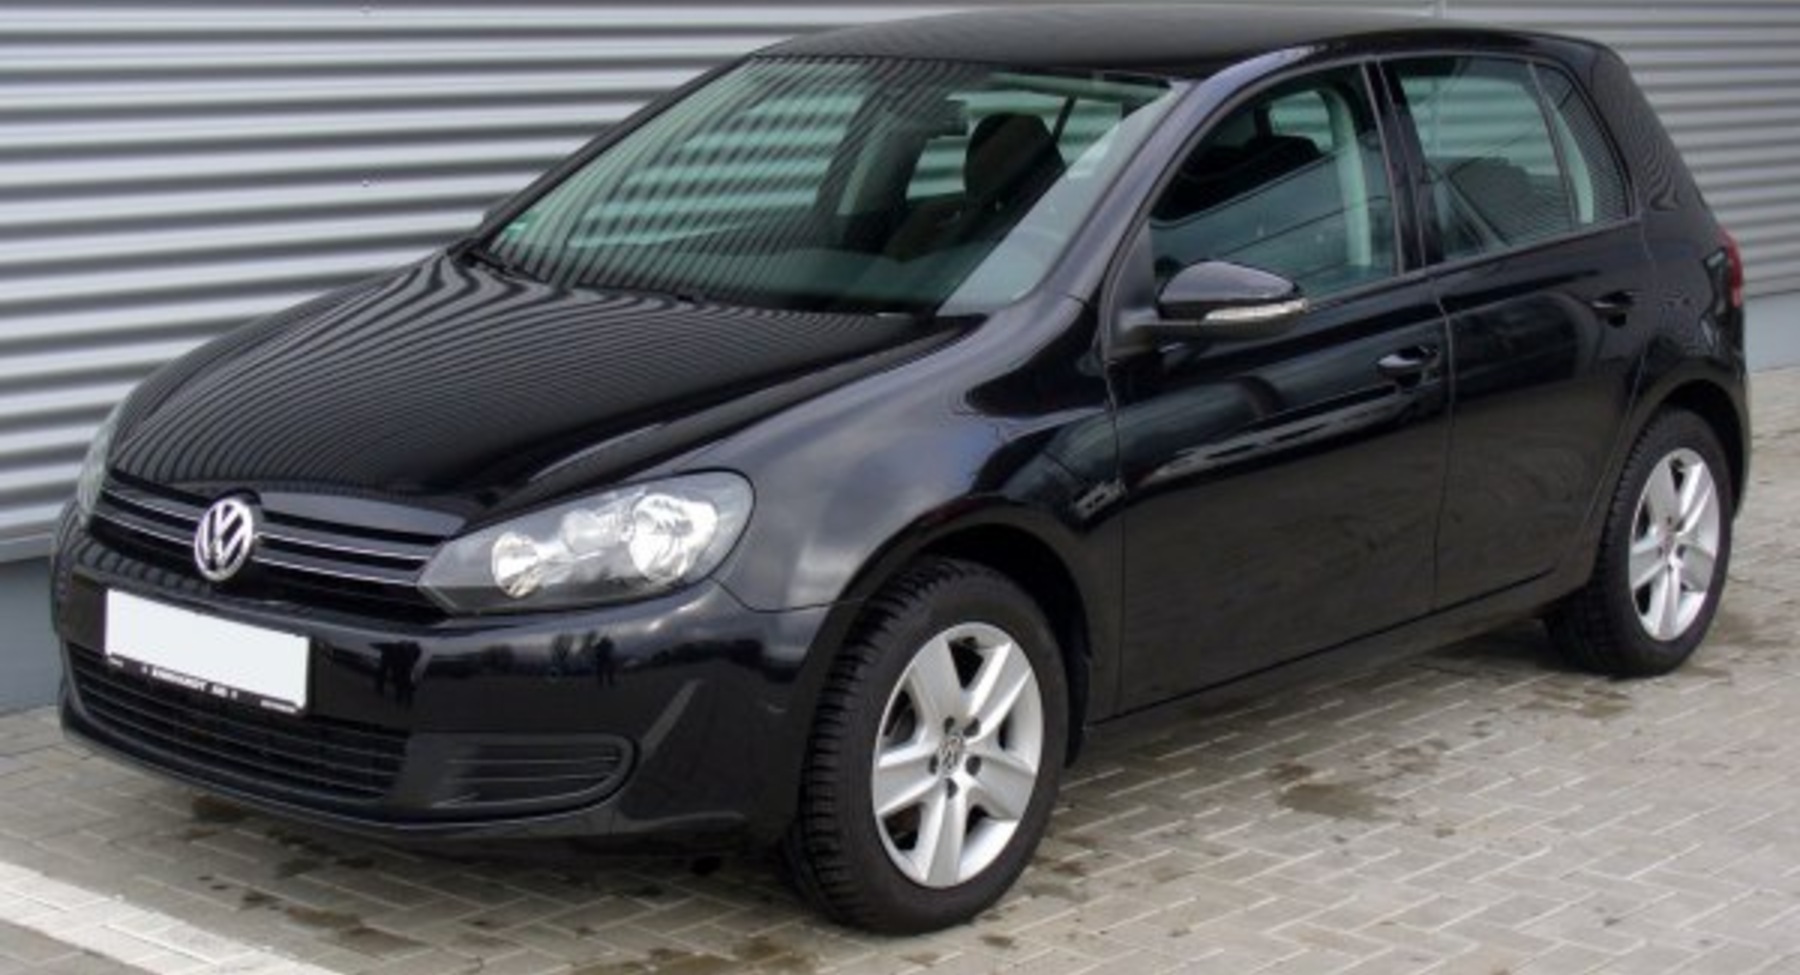 Volkswagen Golf VI (5-door) 1.6 TDI (105 Hp) BMT 2009, 2010, 2011, 2012 